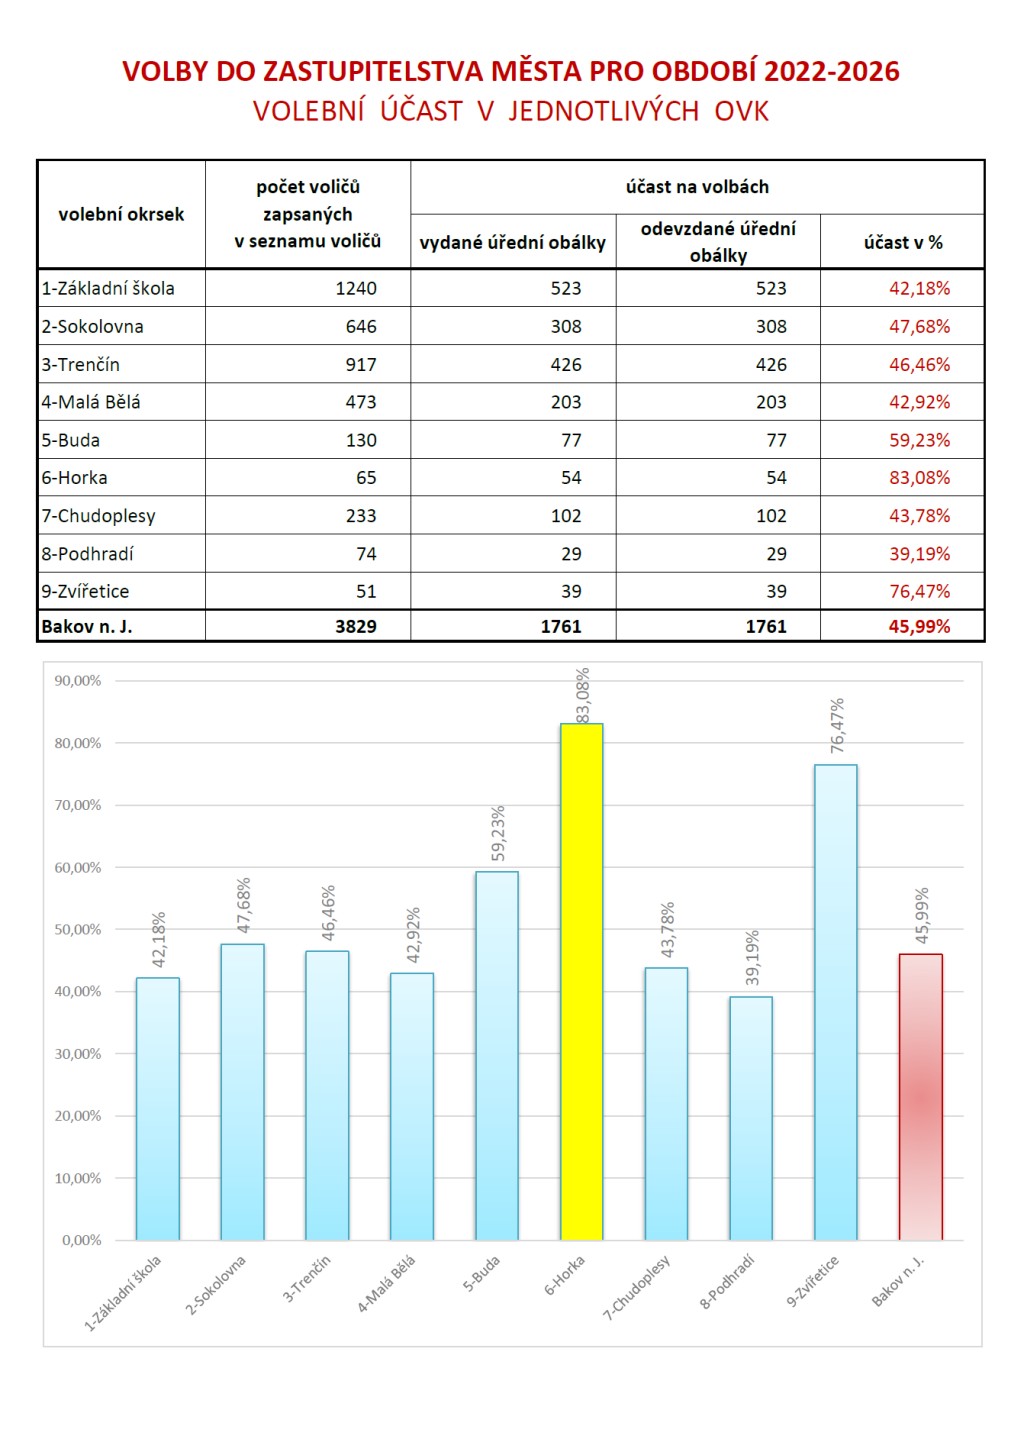 Volební účast v Bakově nad Jizerou a jeho jednotlivých okrscích. Zdroj: město Bakov nad Jizerou